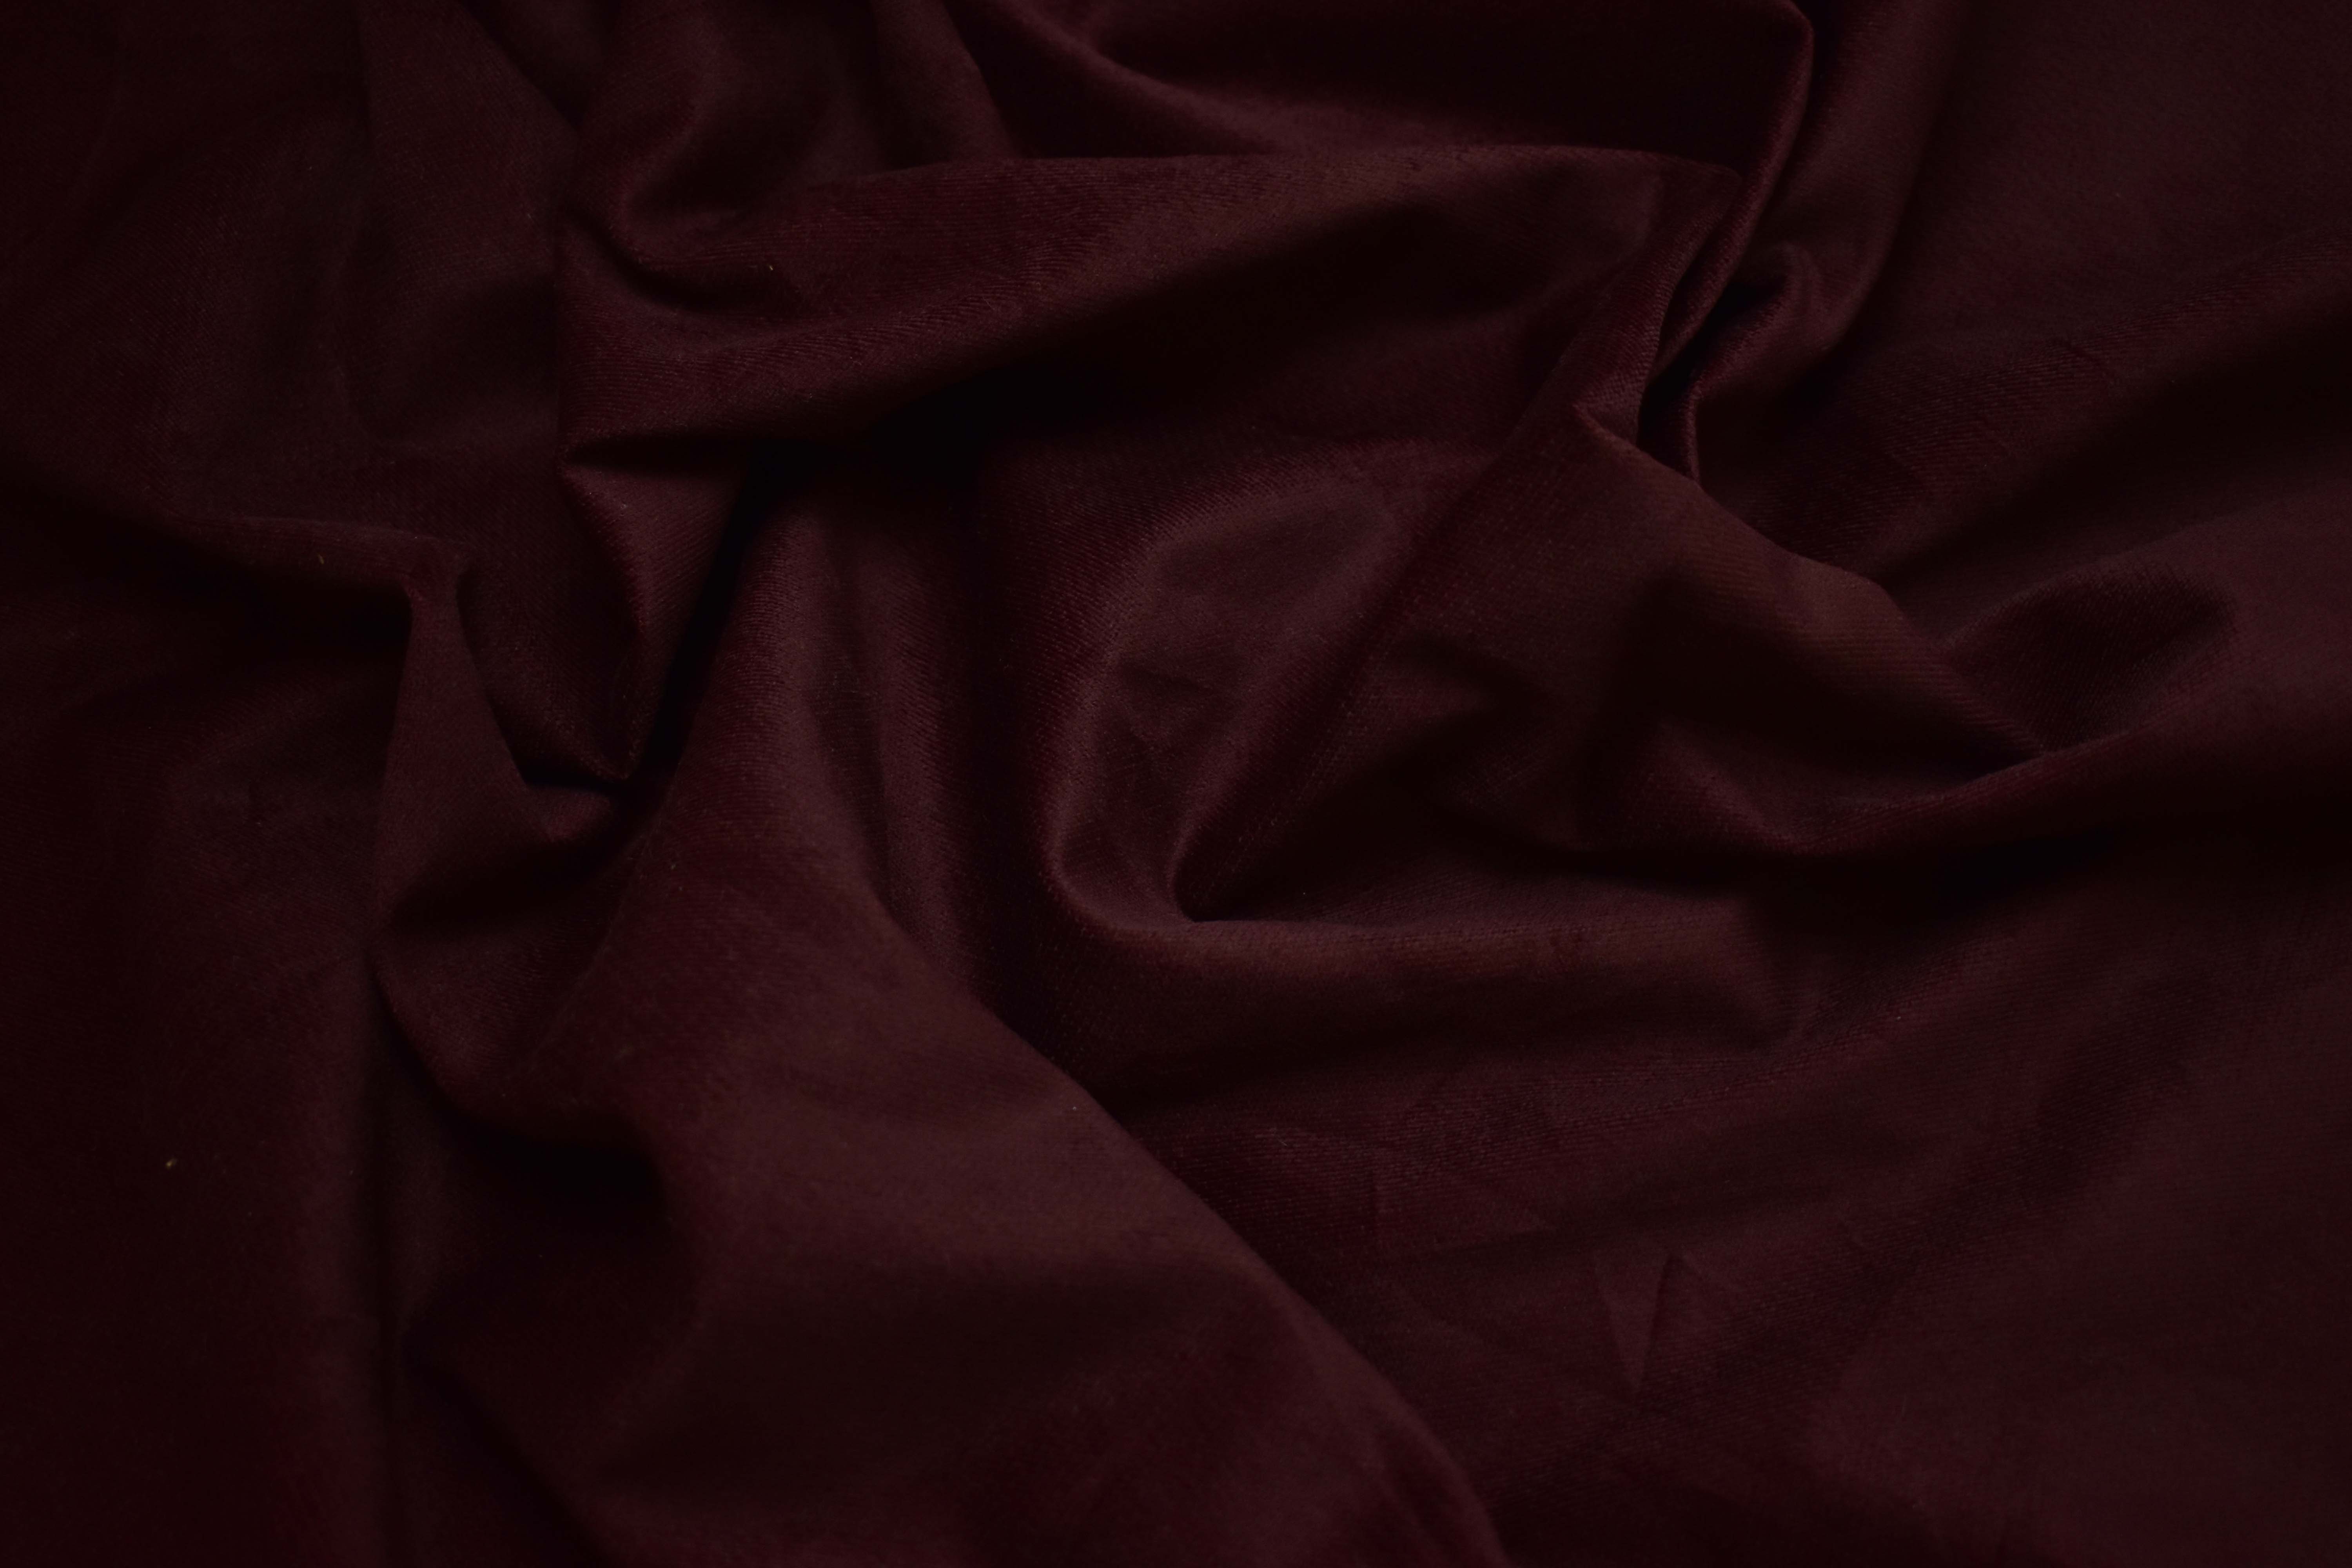 Костюмная бордовая ткань с эластаном W-130908